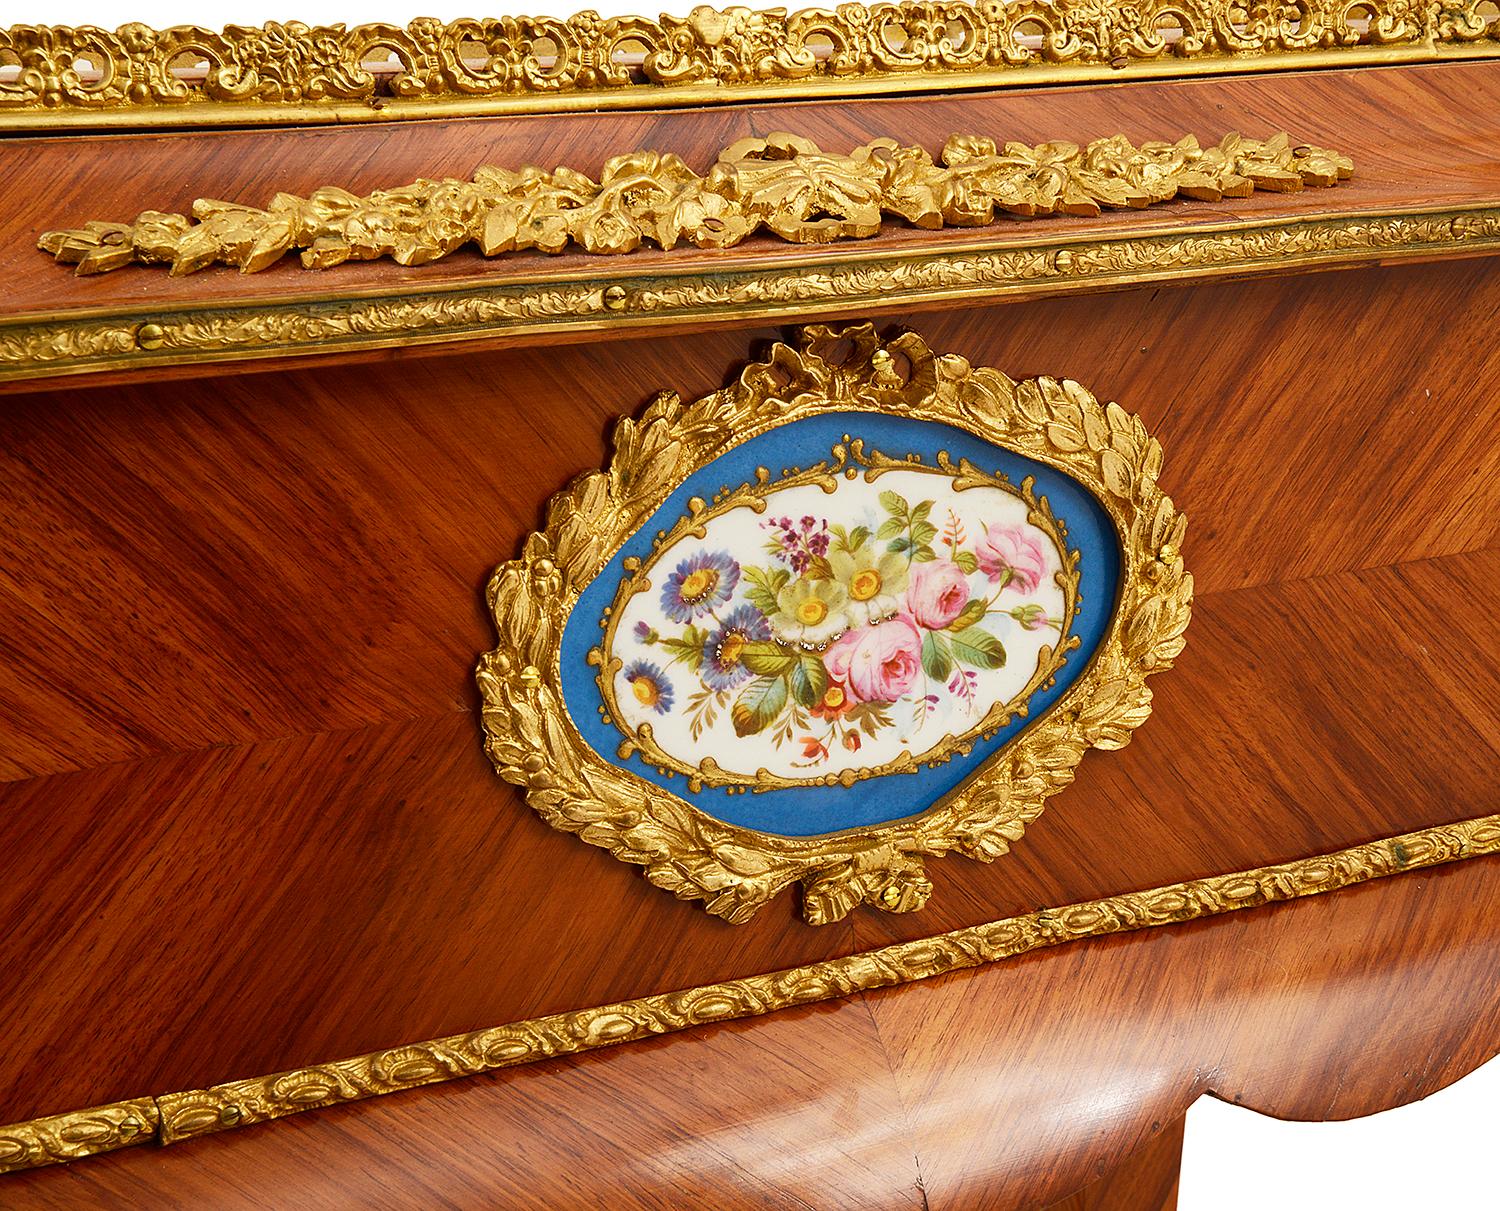 französischer Kingwood-Tisch / Jardiniere aus dem 19. Jahrhundert, mit vergoldeten Ormolu-Formen und Beschlägen. Der Deckel lässt sich hochklappen und gibt ein Fach für Pflanzen, Blumen oder als Celleret (Weinflaschen usw.) frei. Porzellanplatten im